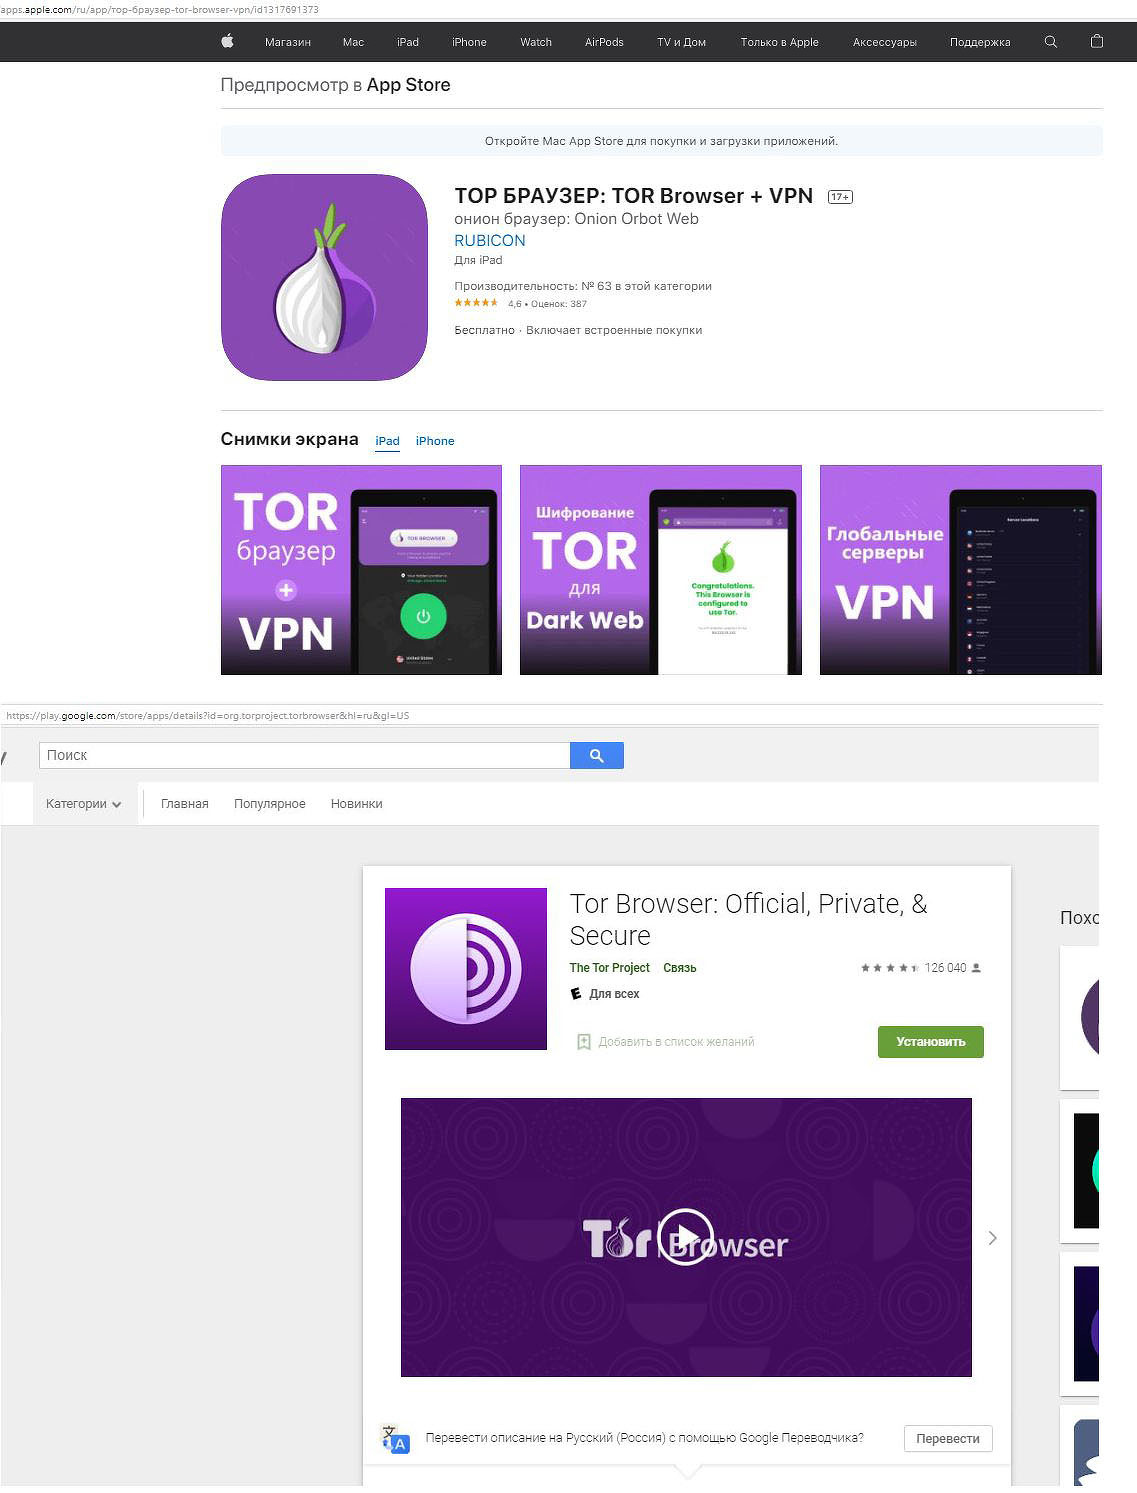 Запрещен ли тор браузер в россии hidra tor browser скачать на русском с официального сайта hydra2web